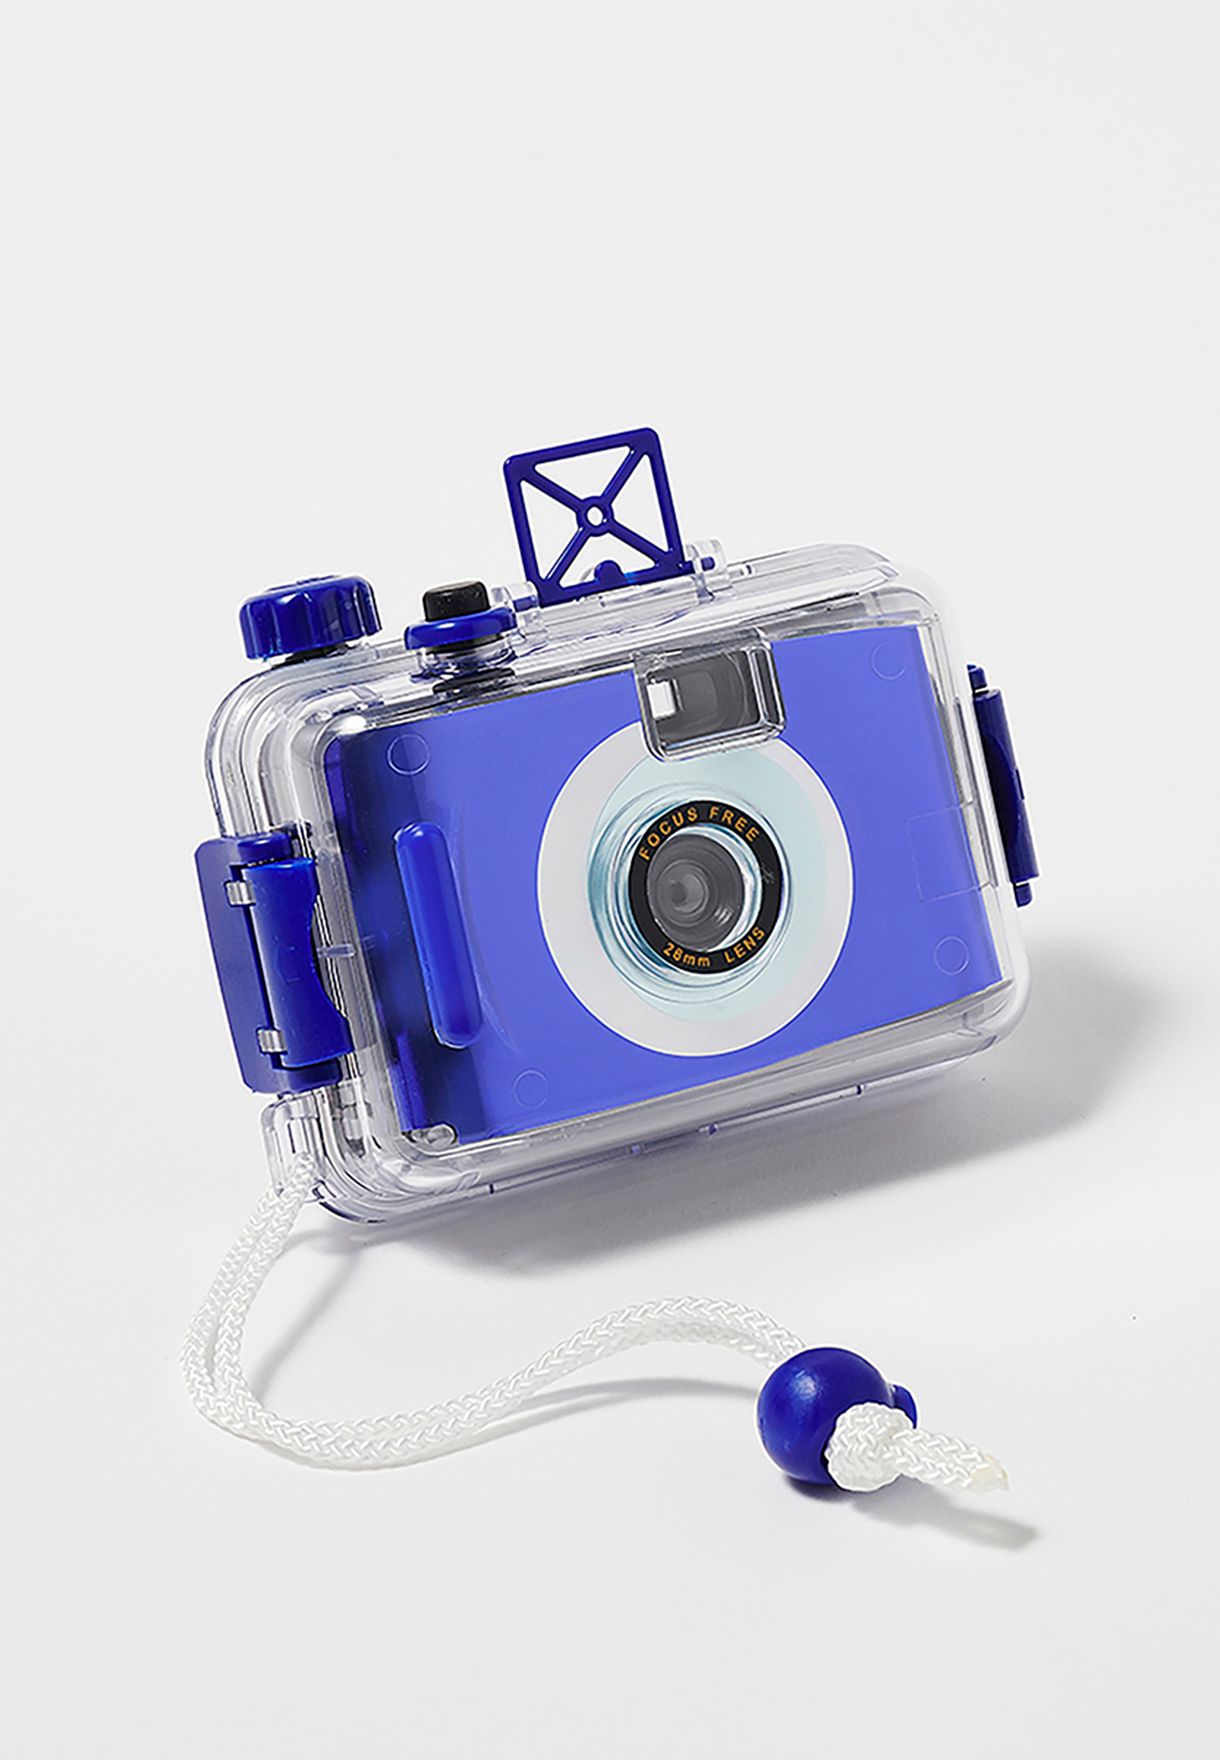 كاميرا تحت الماء زرقاء